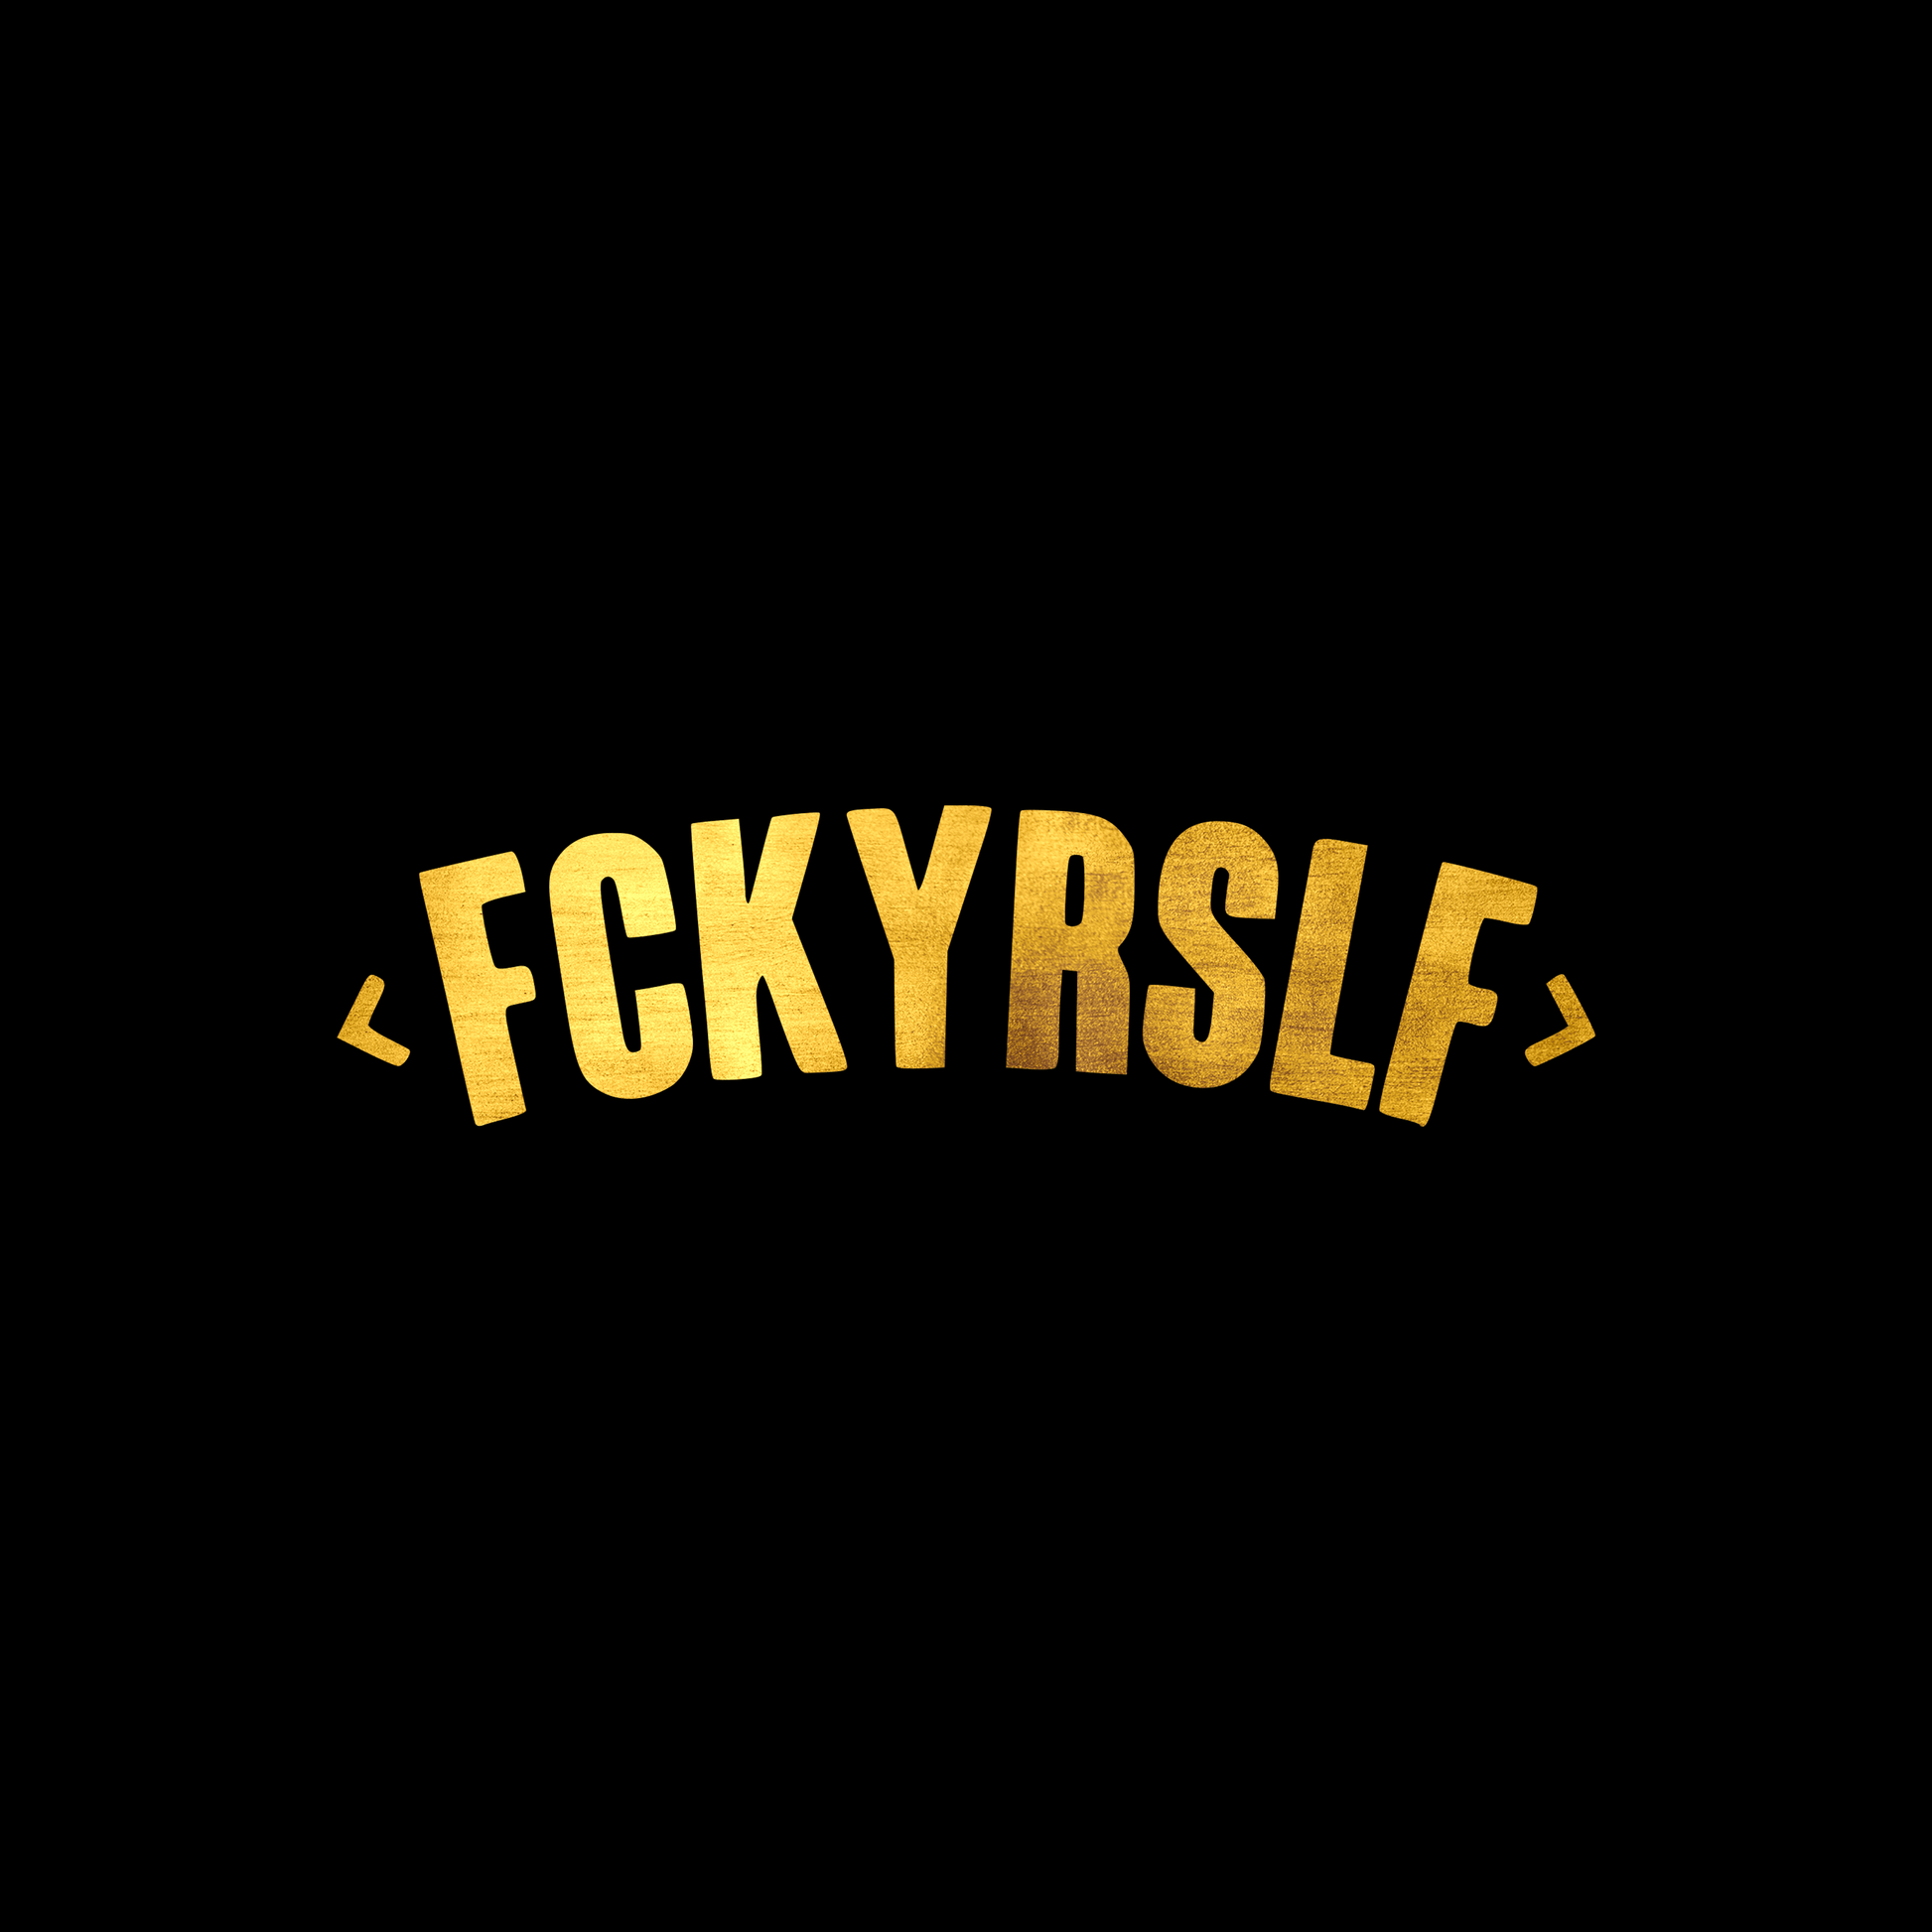 FCKYRSLF sticker decal